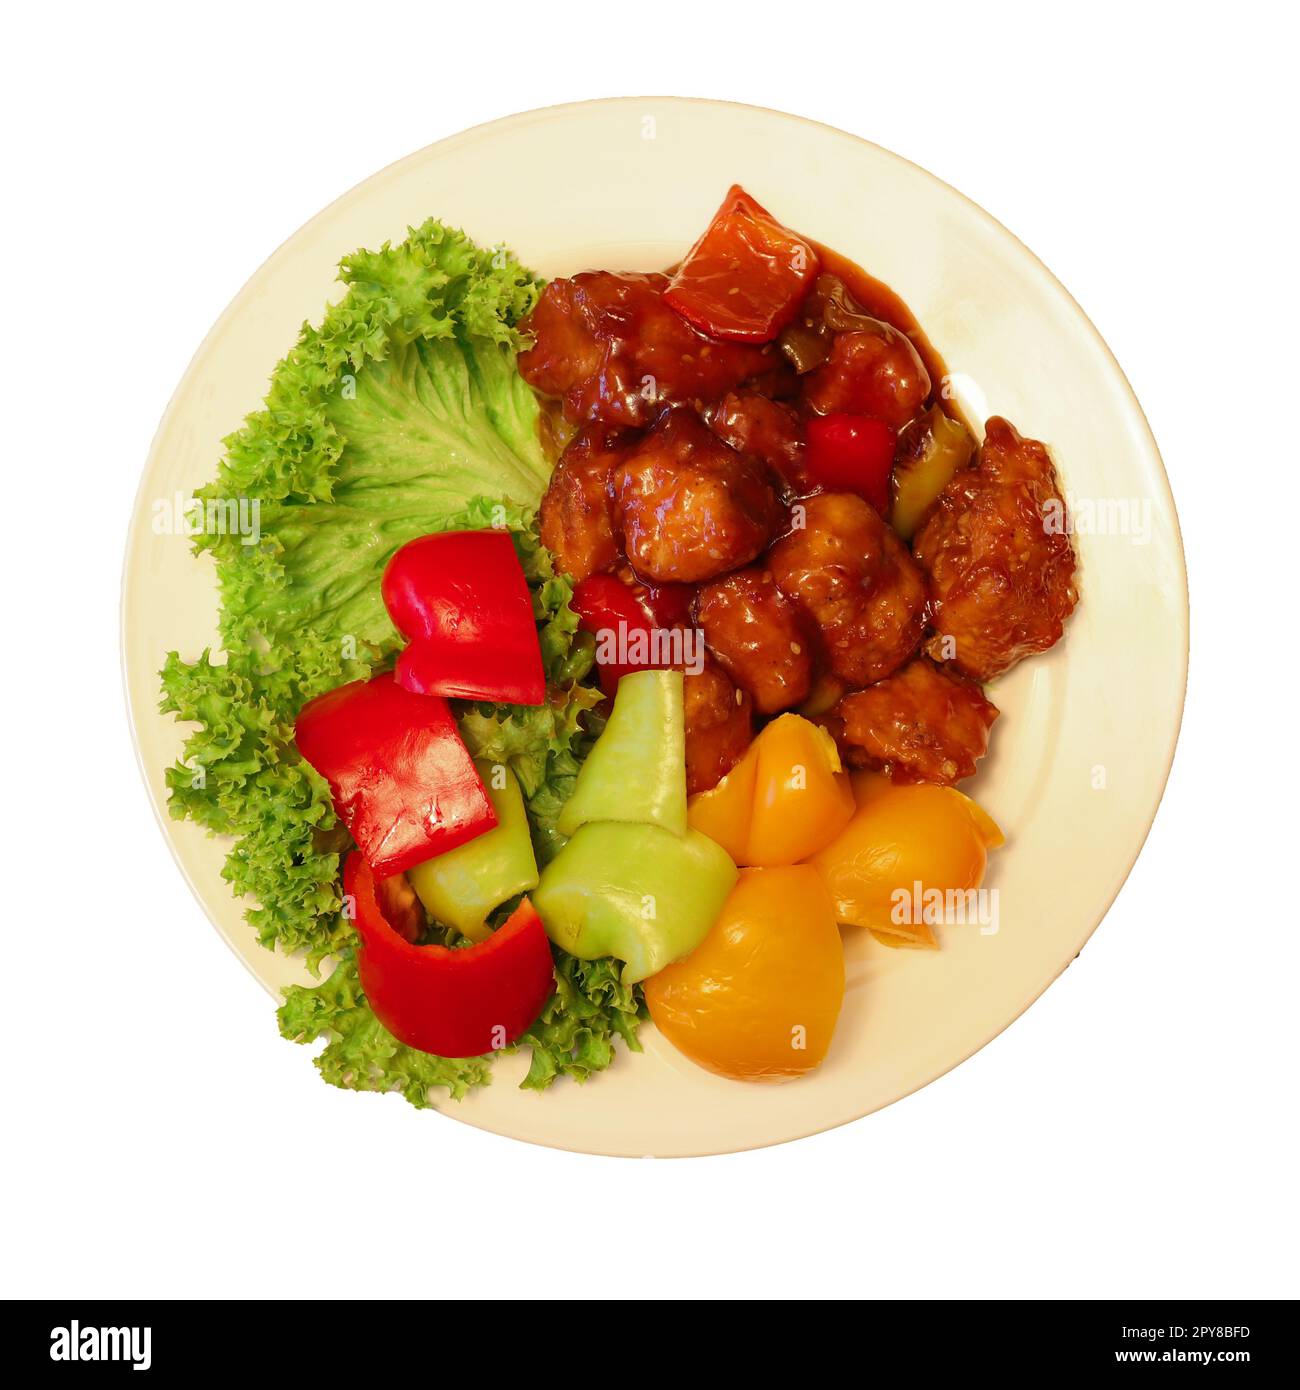 Vue de dessus d'un plat appétissant de viande avec une sauce rouge vibrante et des légumes variés, isolés sur un fond blanc immaculé Banque D'Images